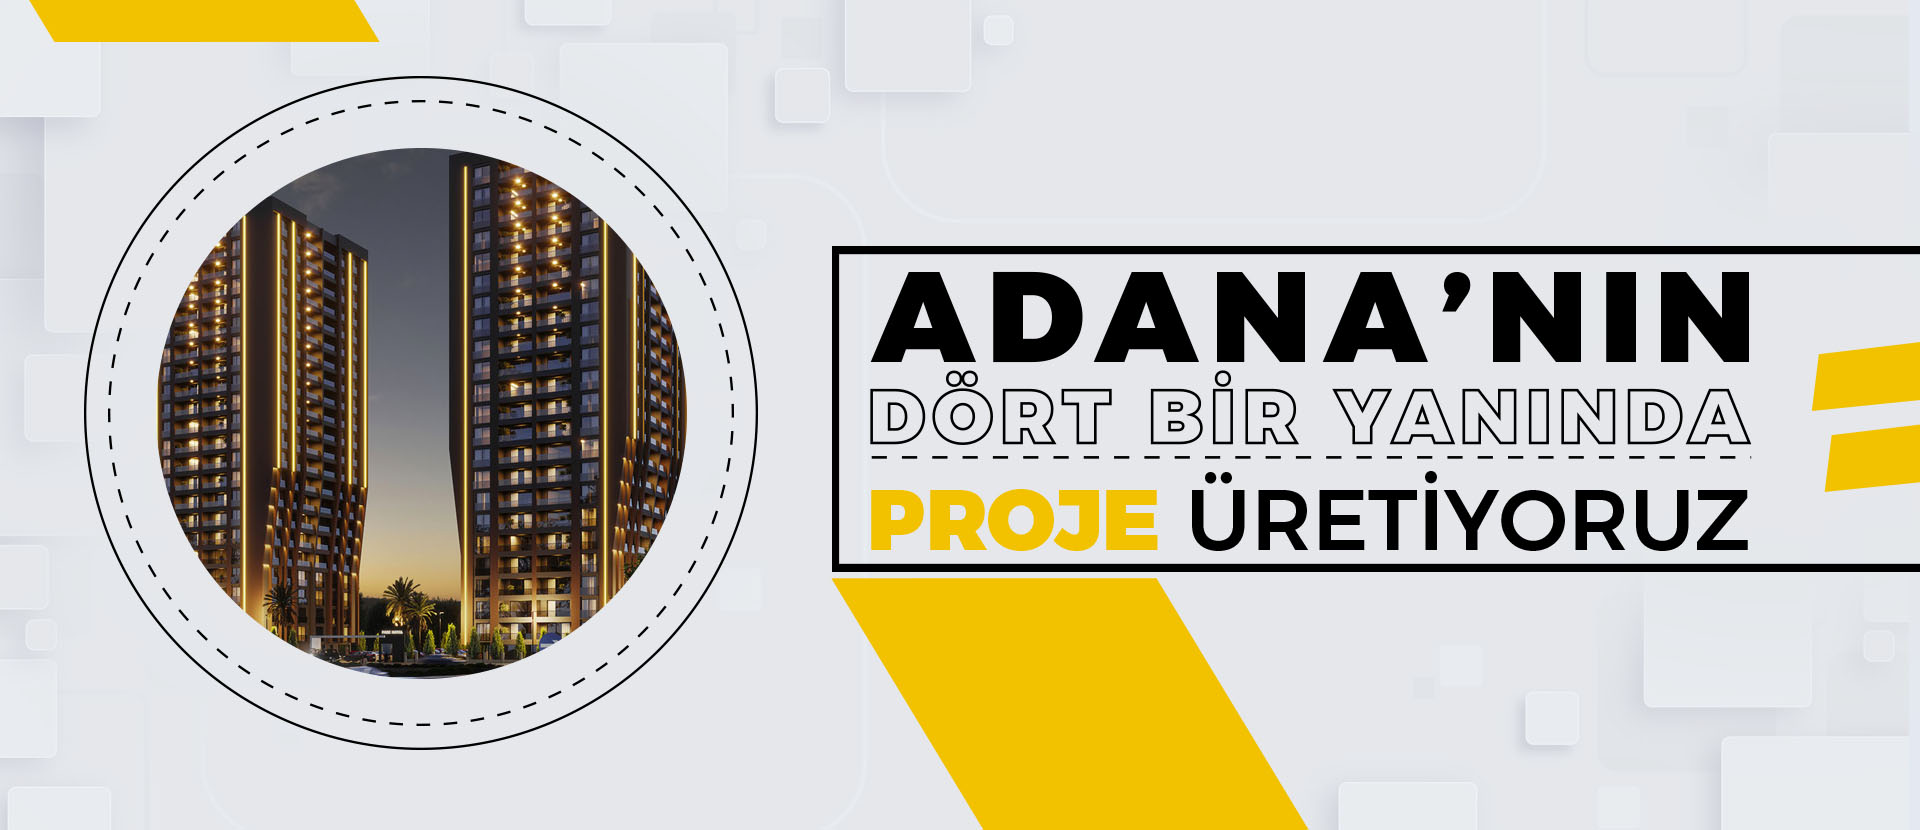 Adana'nın Dört Bir Yanında Proje Üretiyoruz